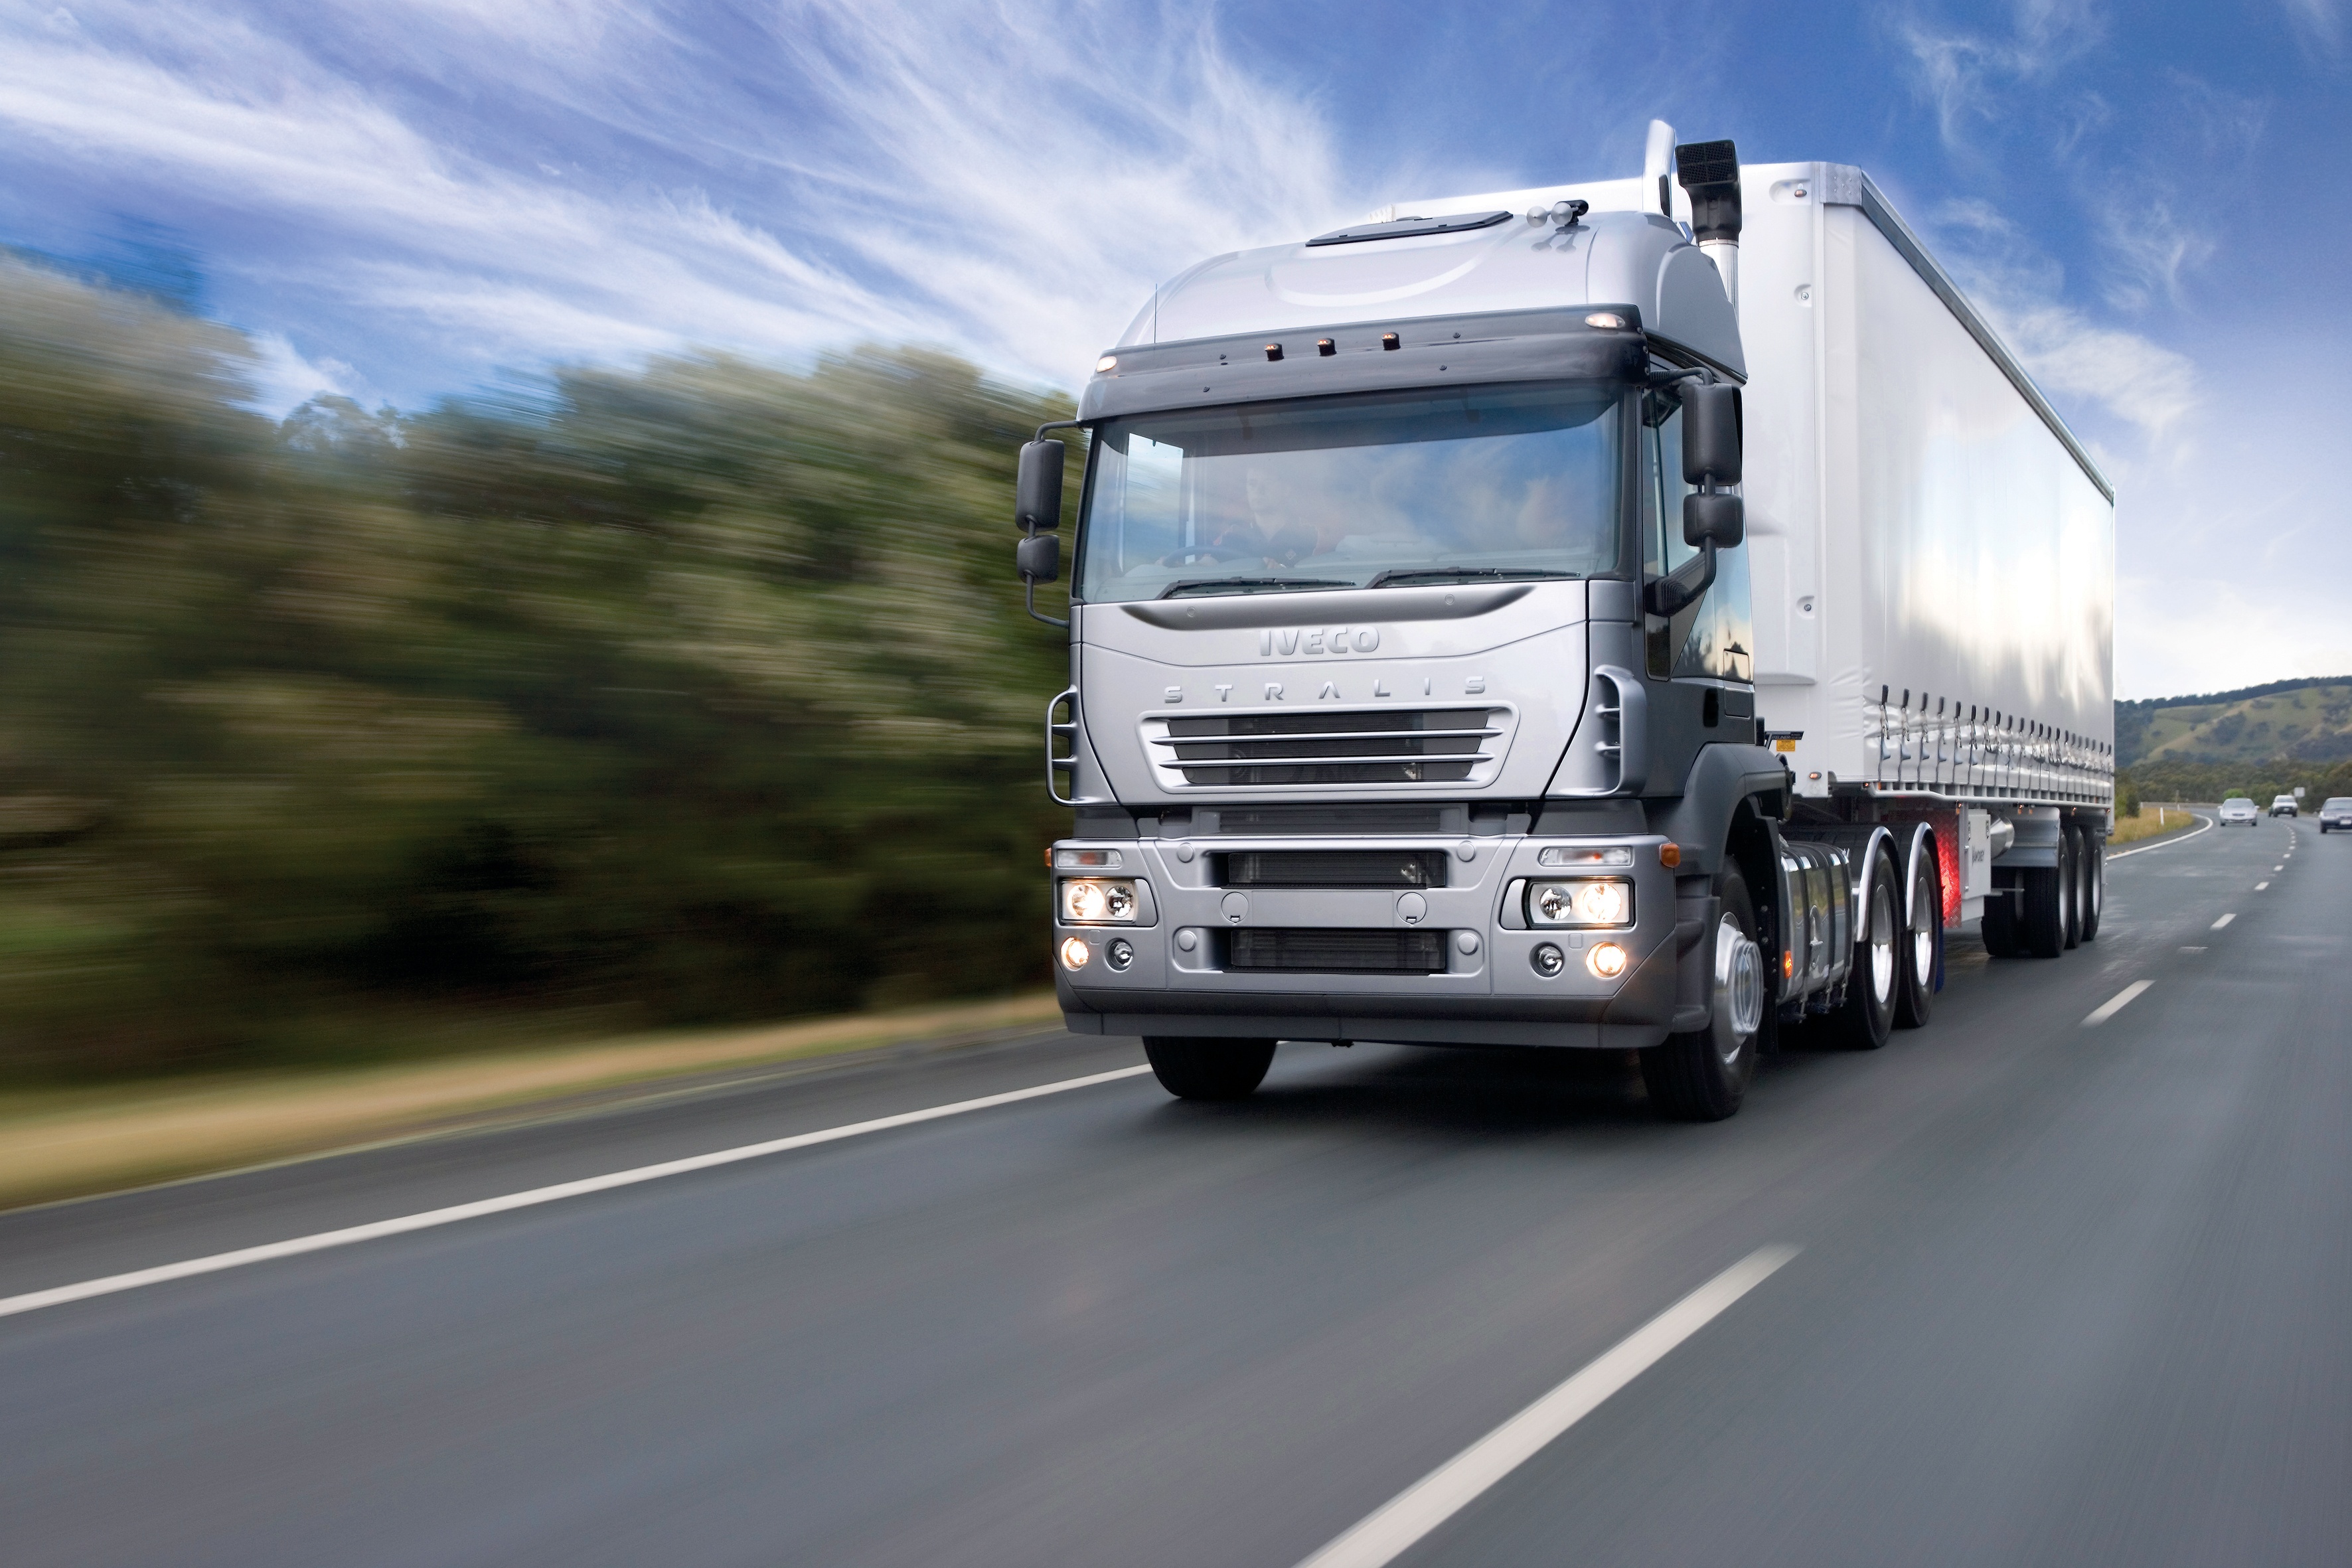 camion wallpaper,vehículo terrestre,vehículo,camión,camión de remolque,vehiculo comercial